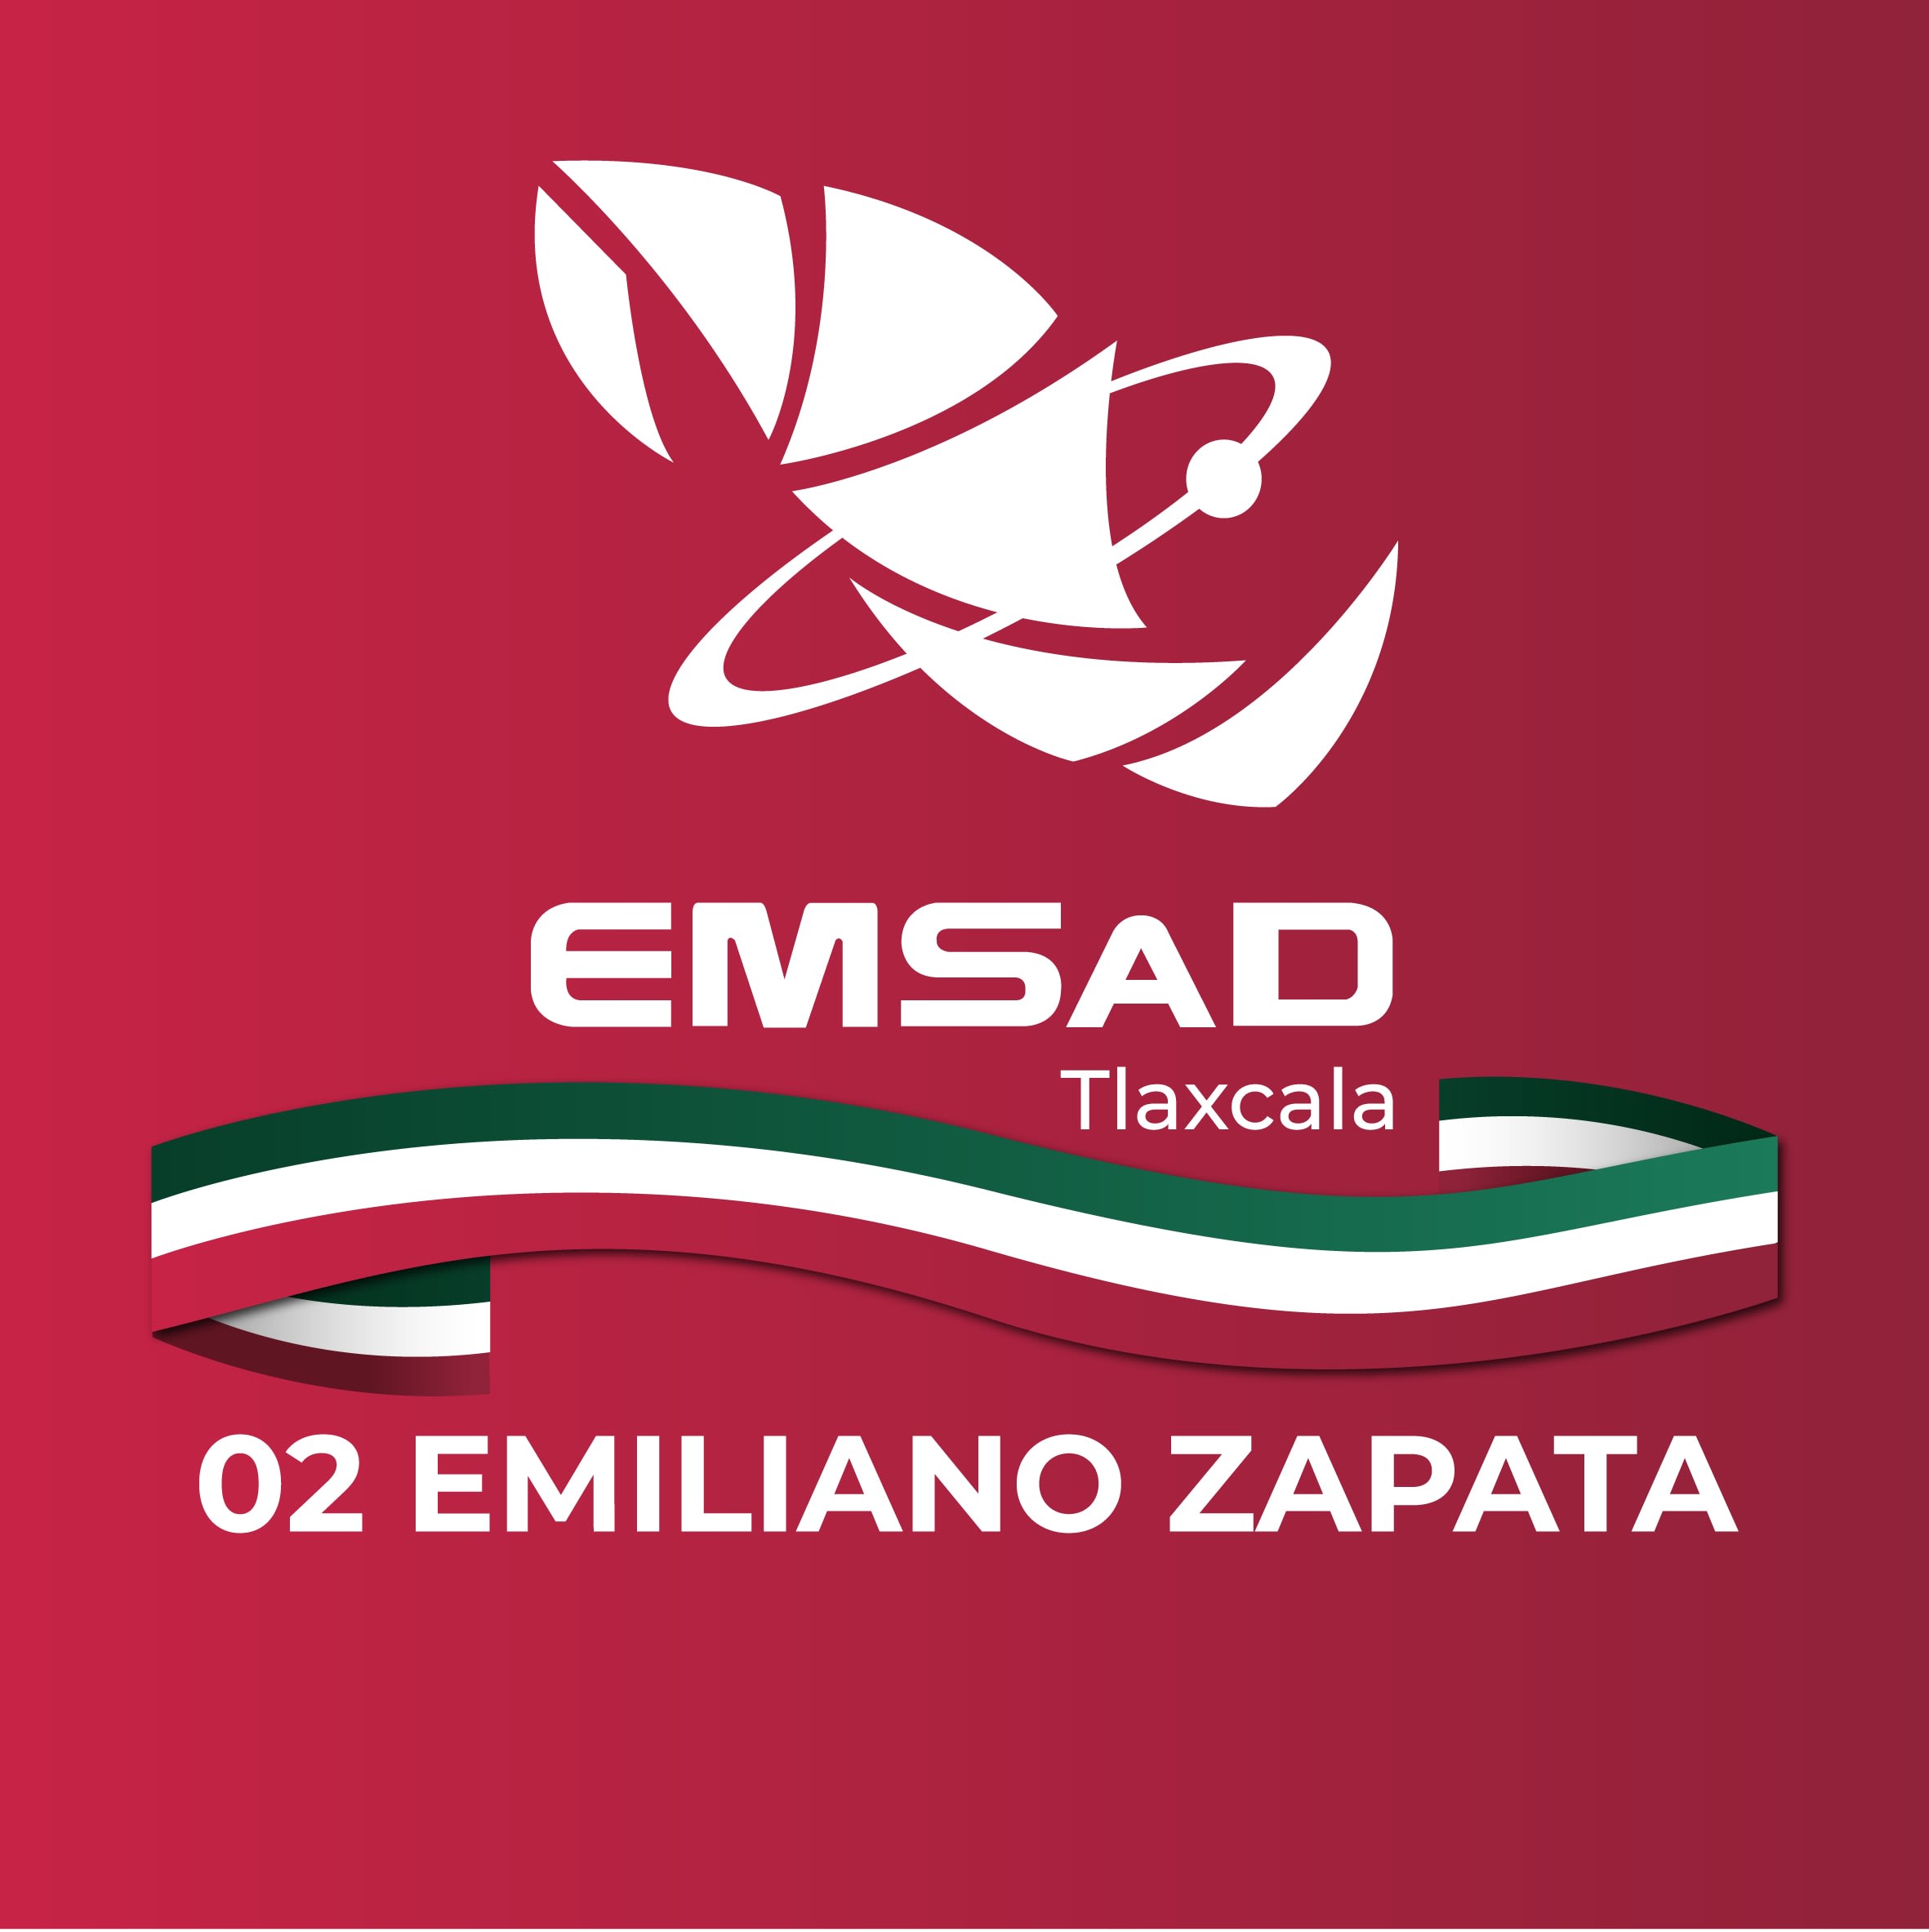 Emsad Emiliano Zapata